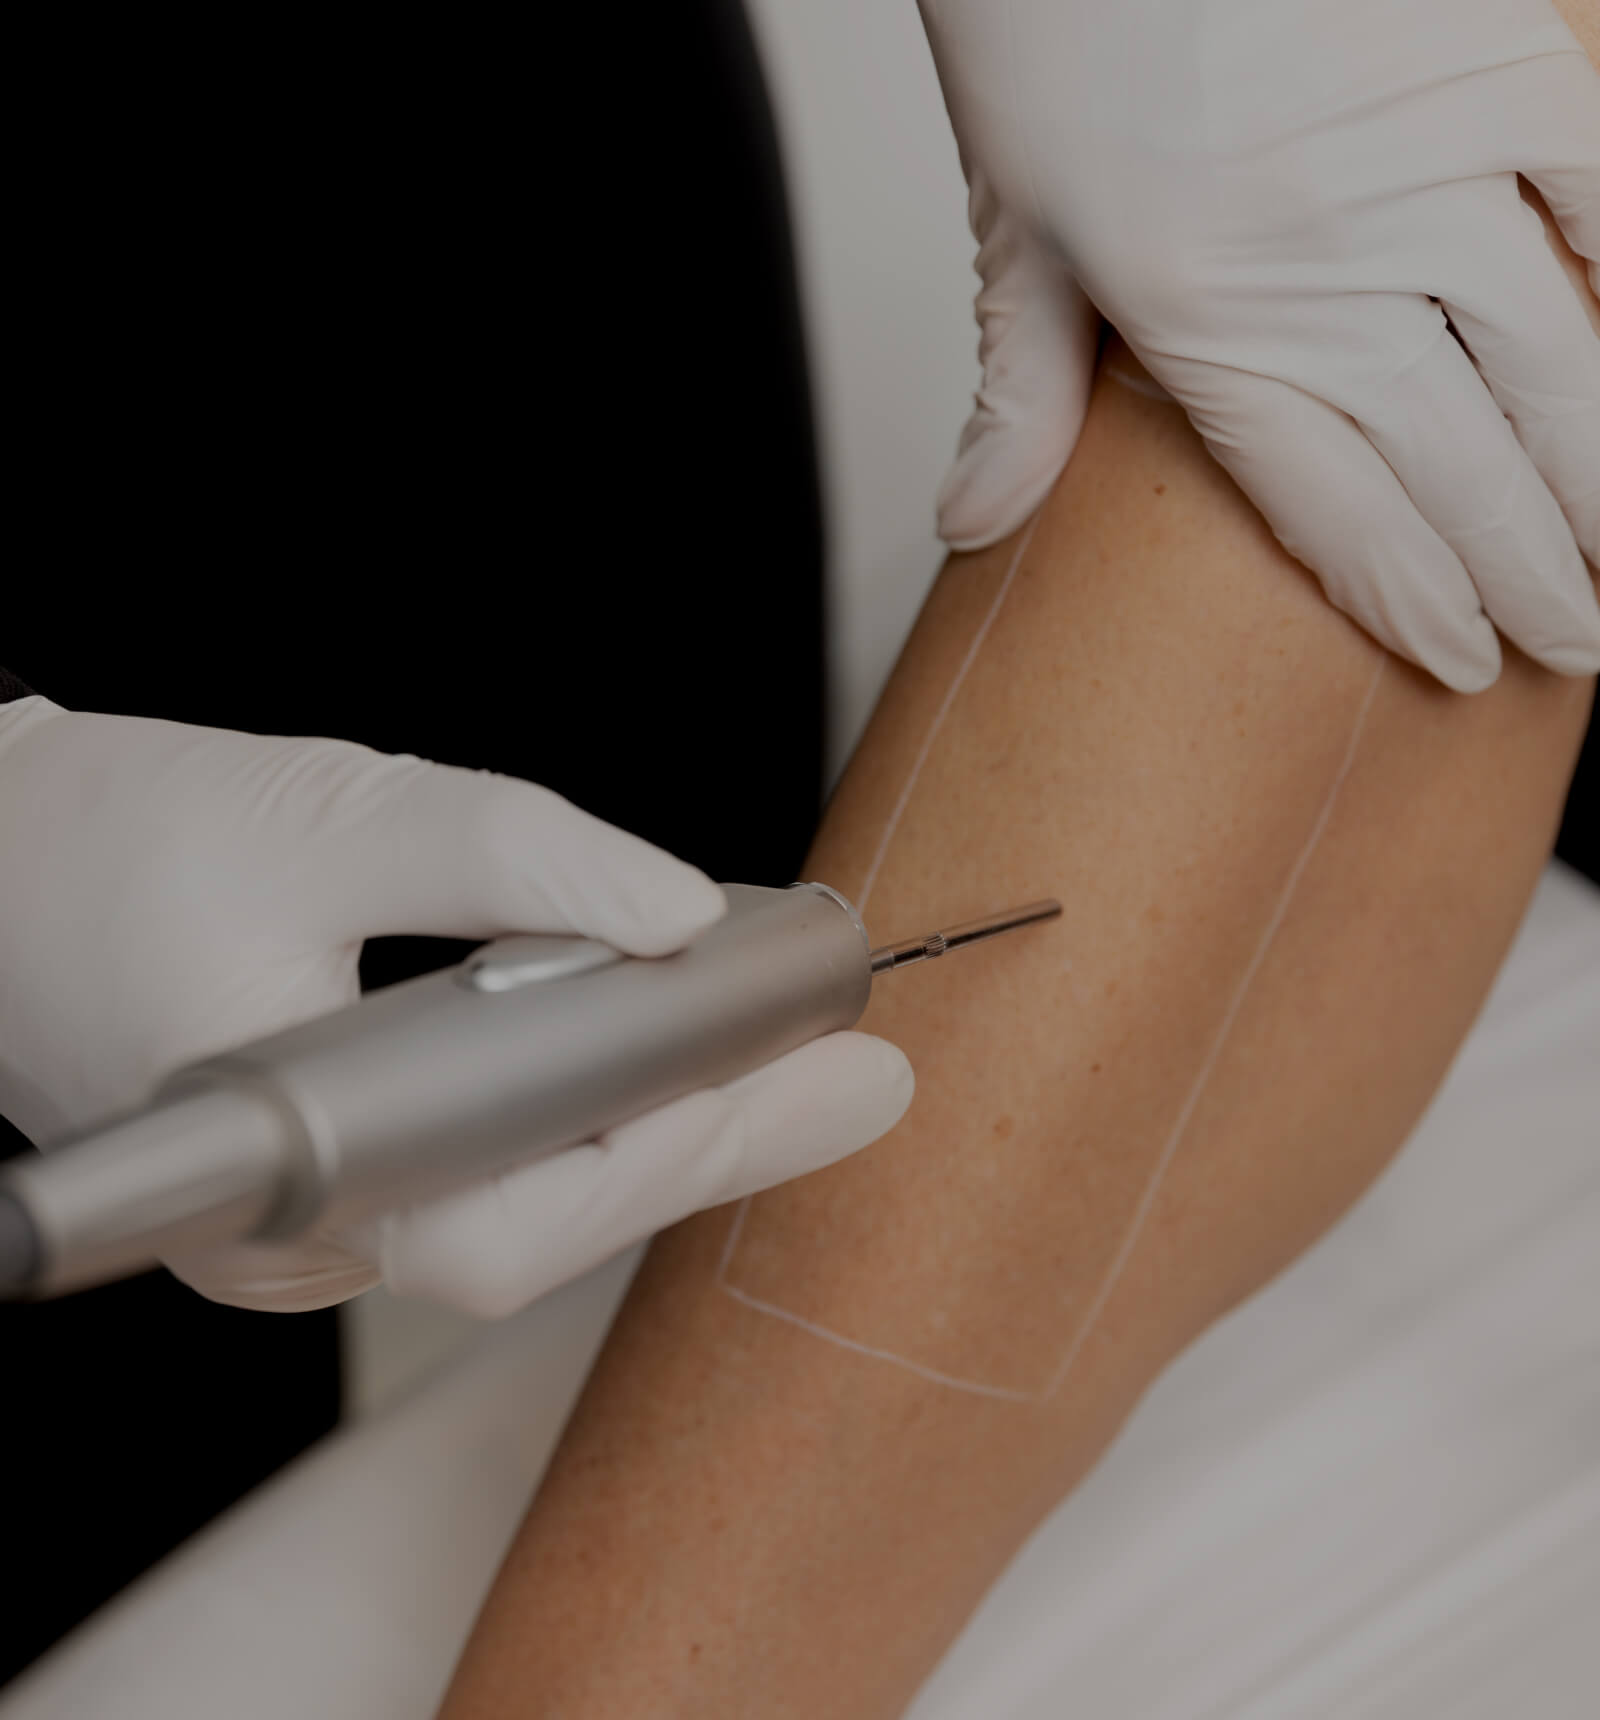 Une technicienne médico-esthétique de la Clinique Chloé utilisant un laser pour l'épilation de la jambe d'une patiente